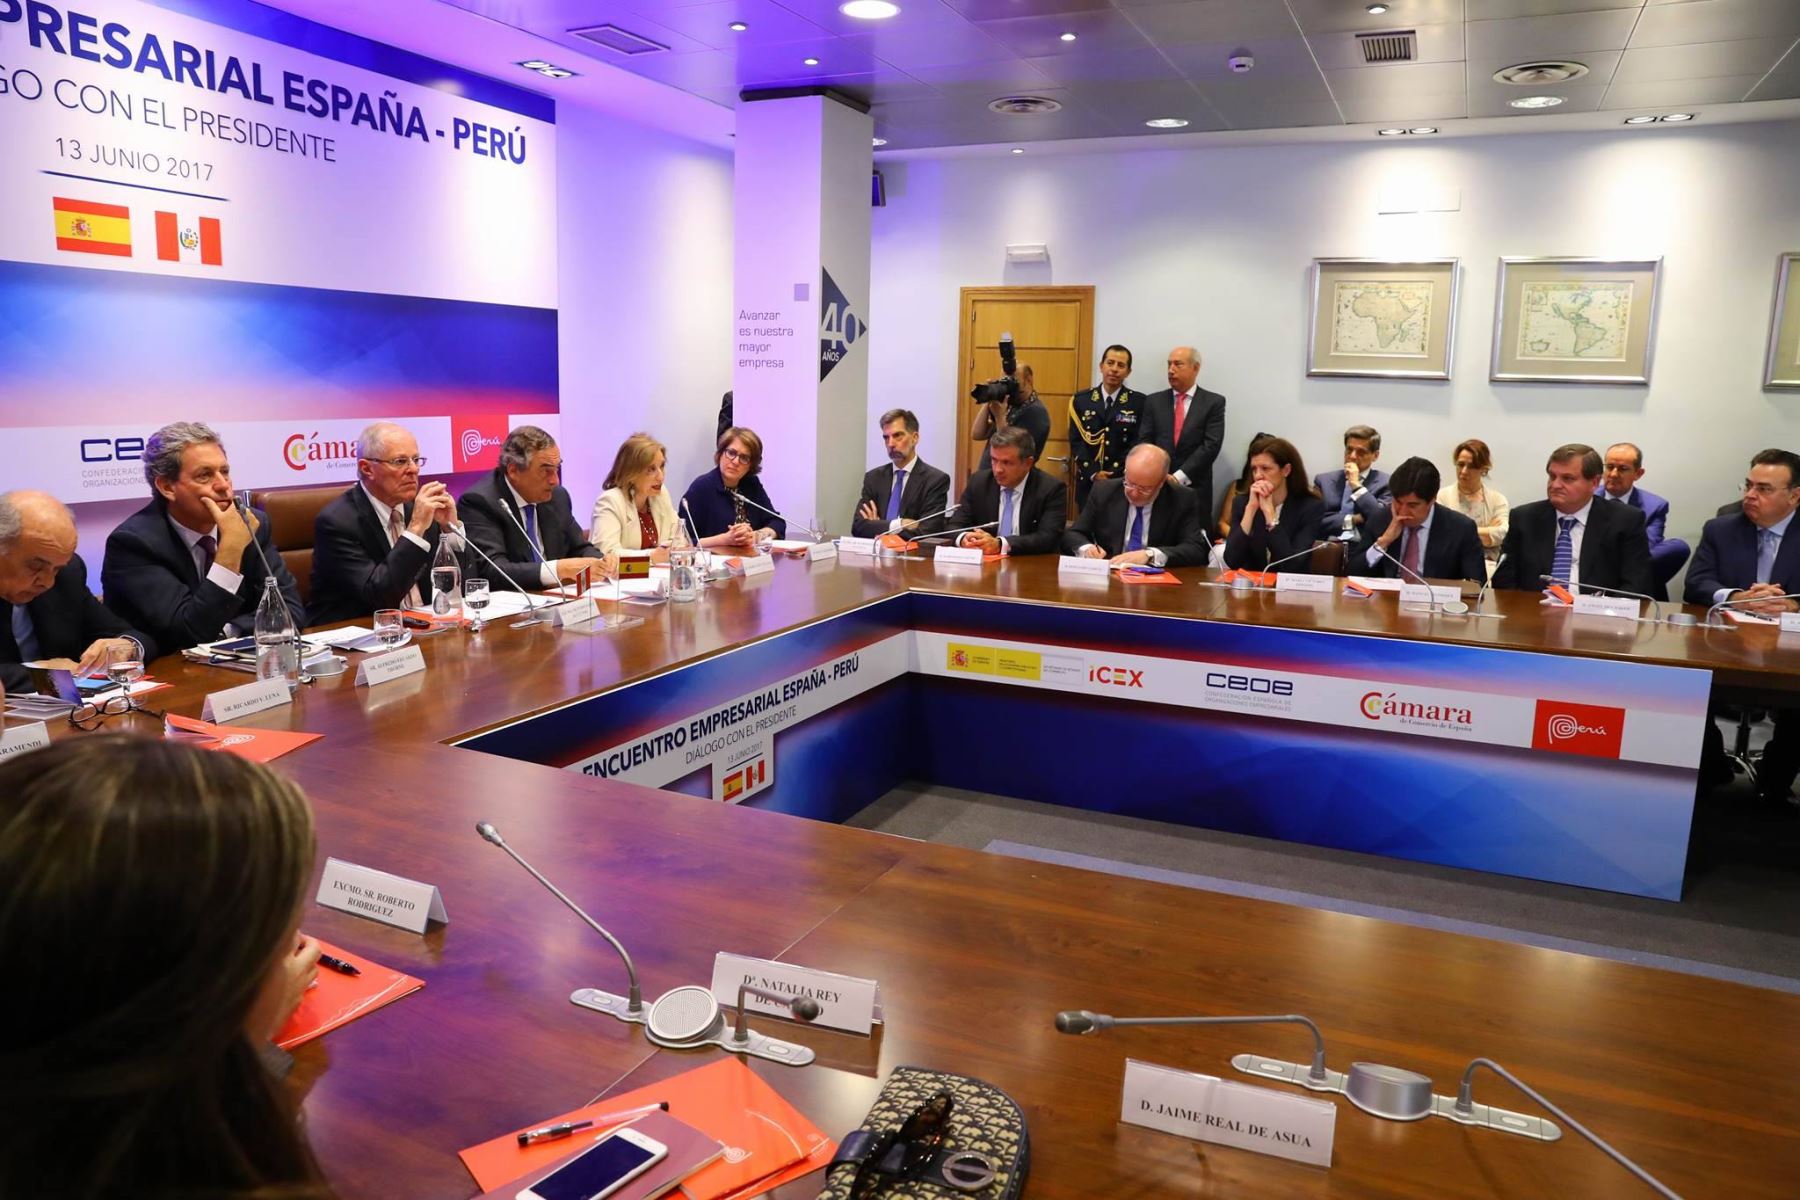 El jefe del Estado, Pedro Pablo Kuczynski, , expone durante encuentro empresarial España Perú. Foto: ANDINA/ Andres Valle - Presidencia